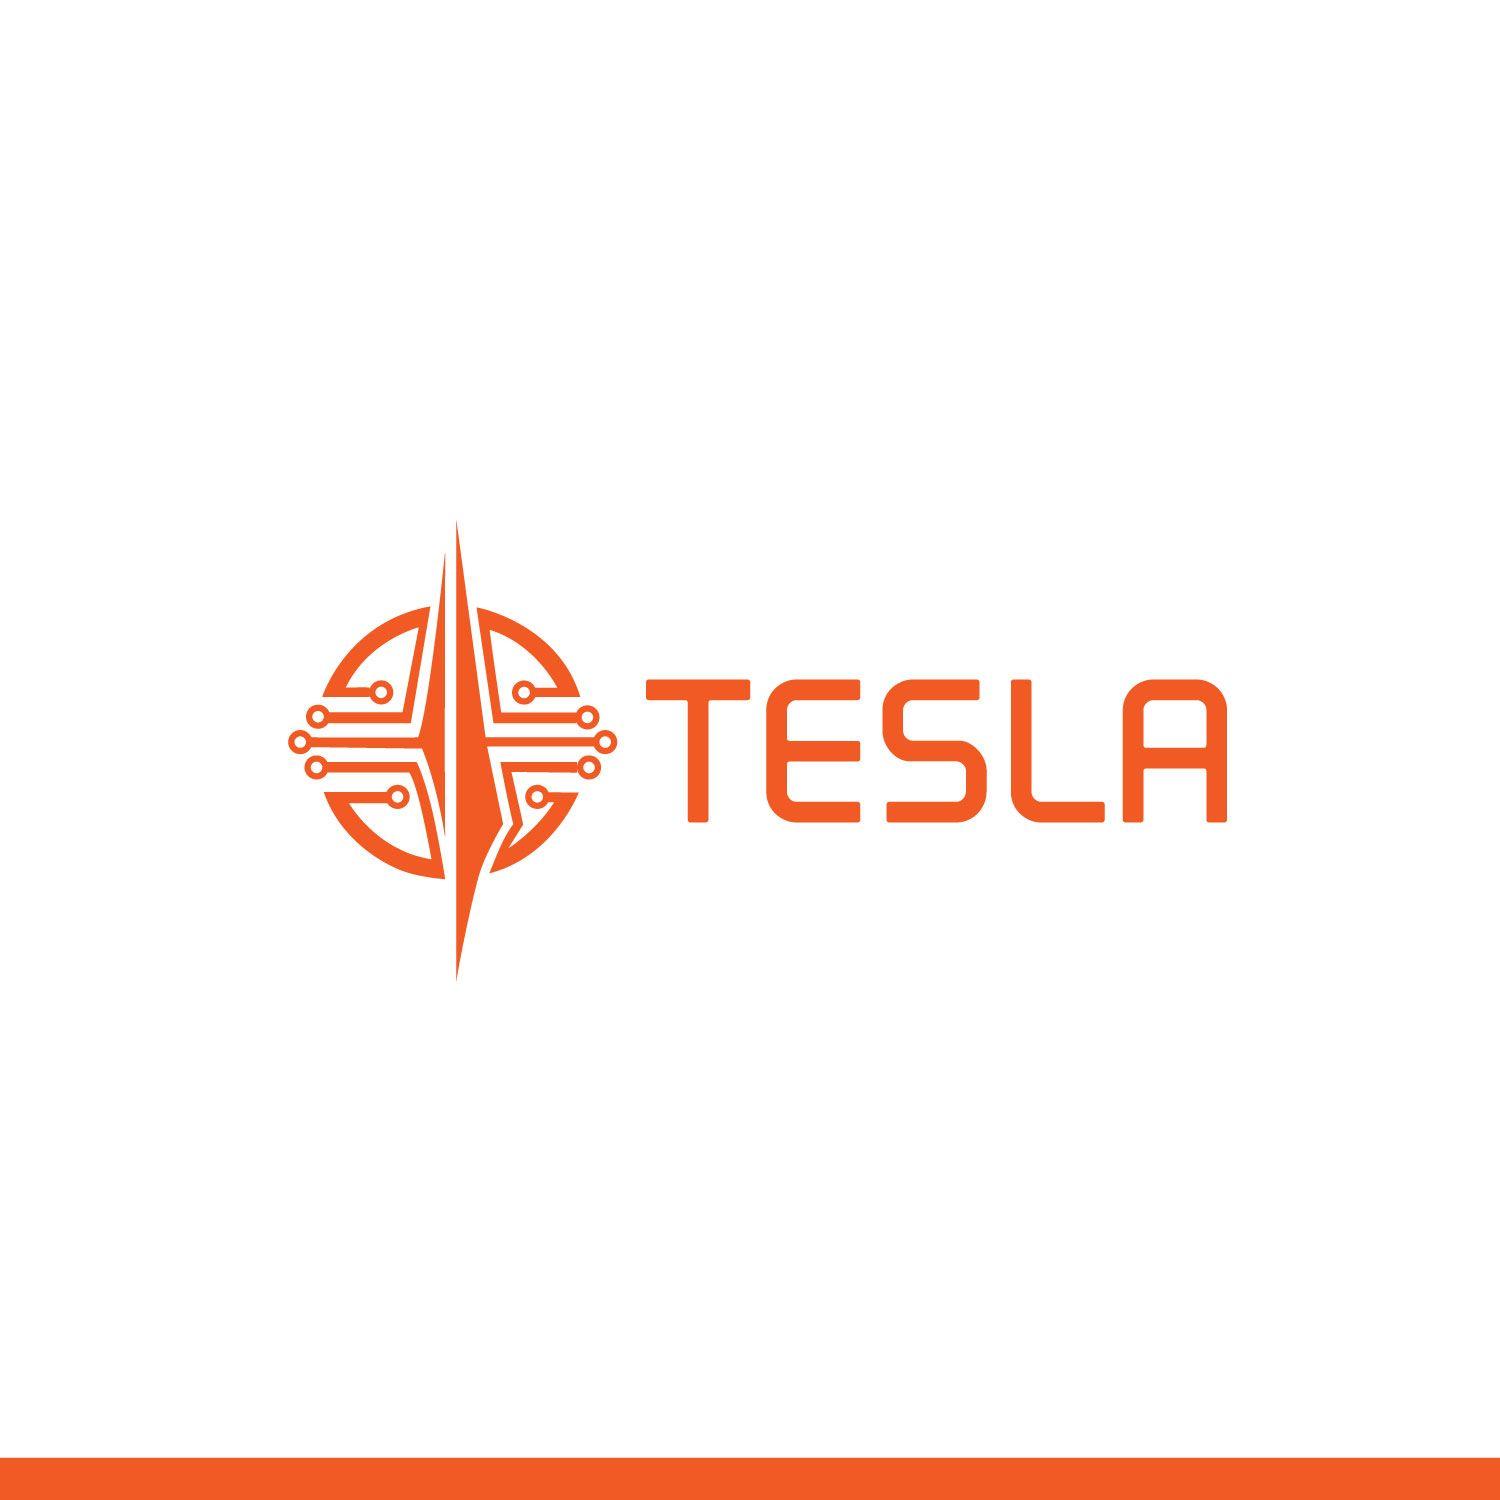 Tesla Business Logo - Modern, Professional, Business Logo Design for Tesla by HEALTHY ...